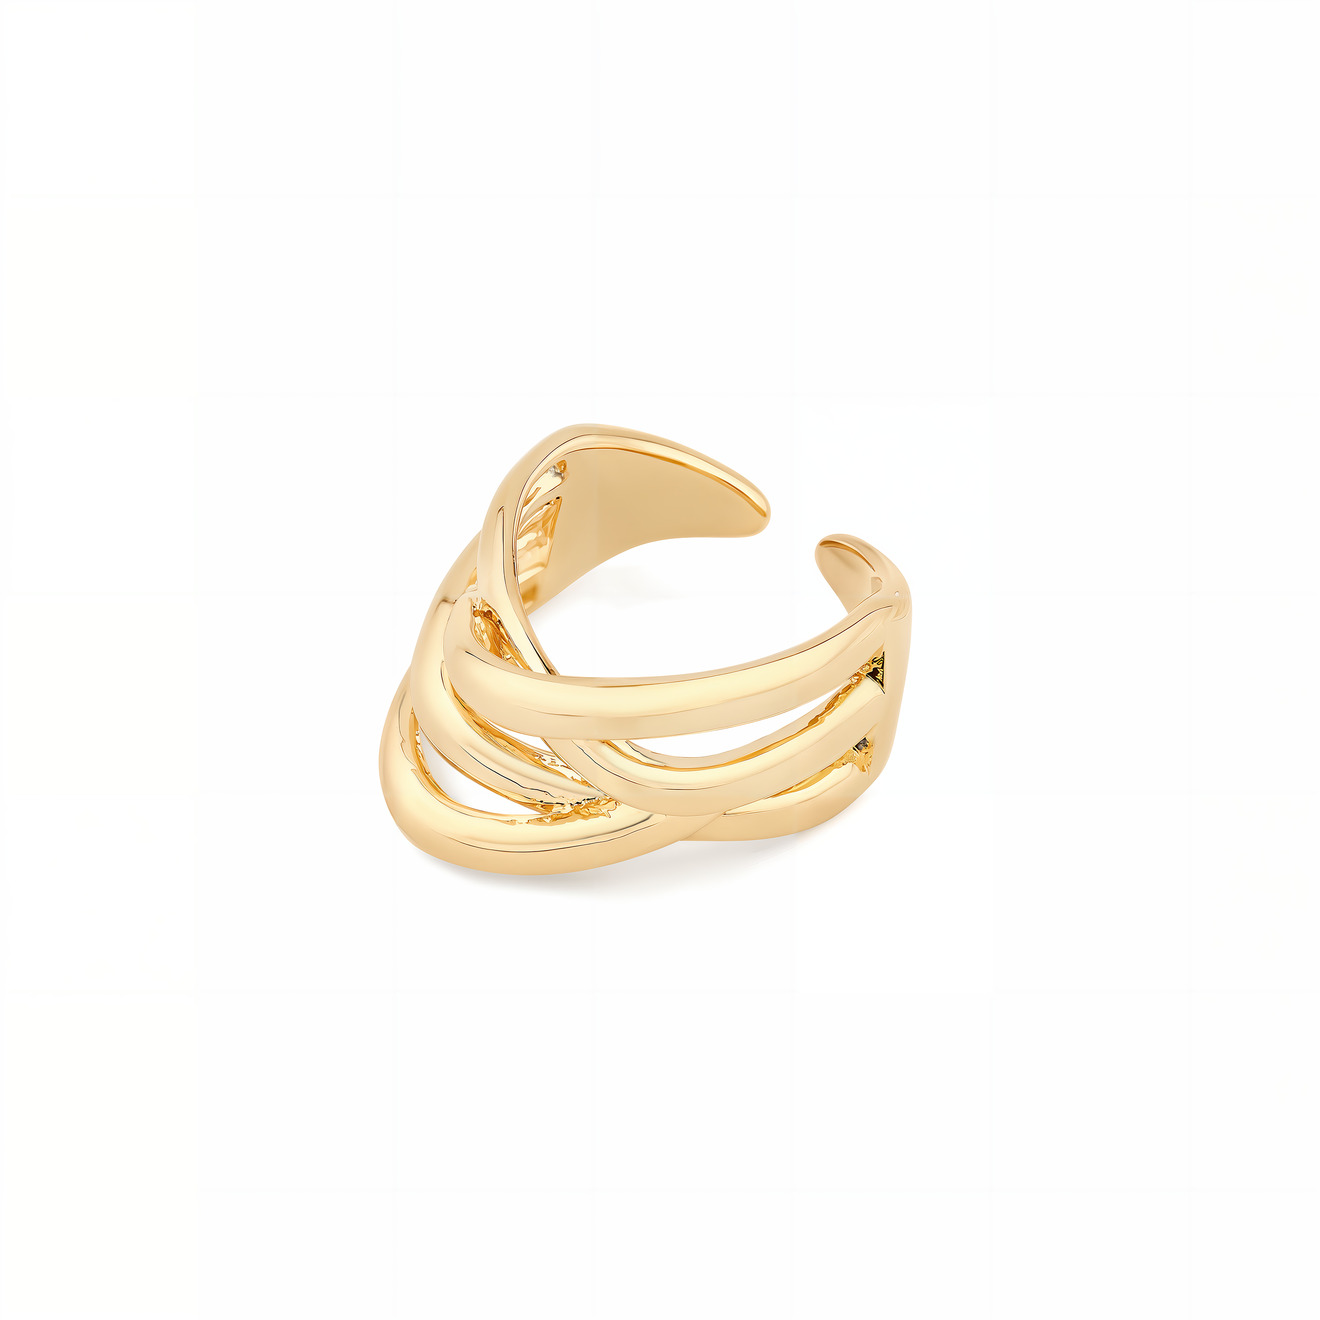 Aloud Многослойное золотистое кольцо lisa smith золотистое фактурное многоуровневое кольцо